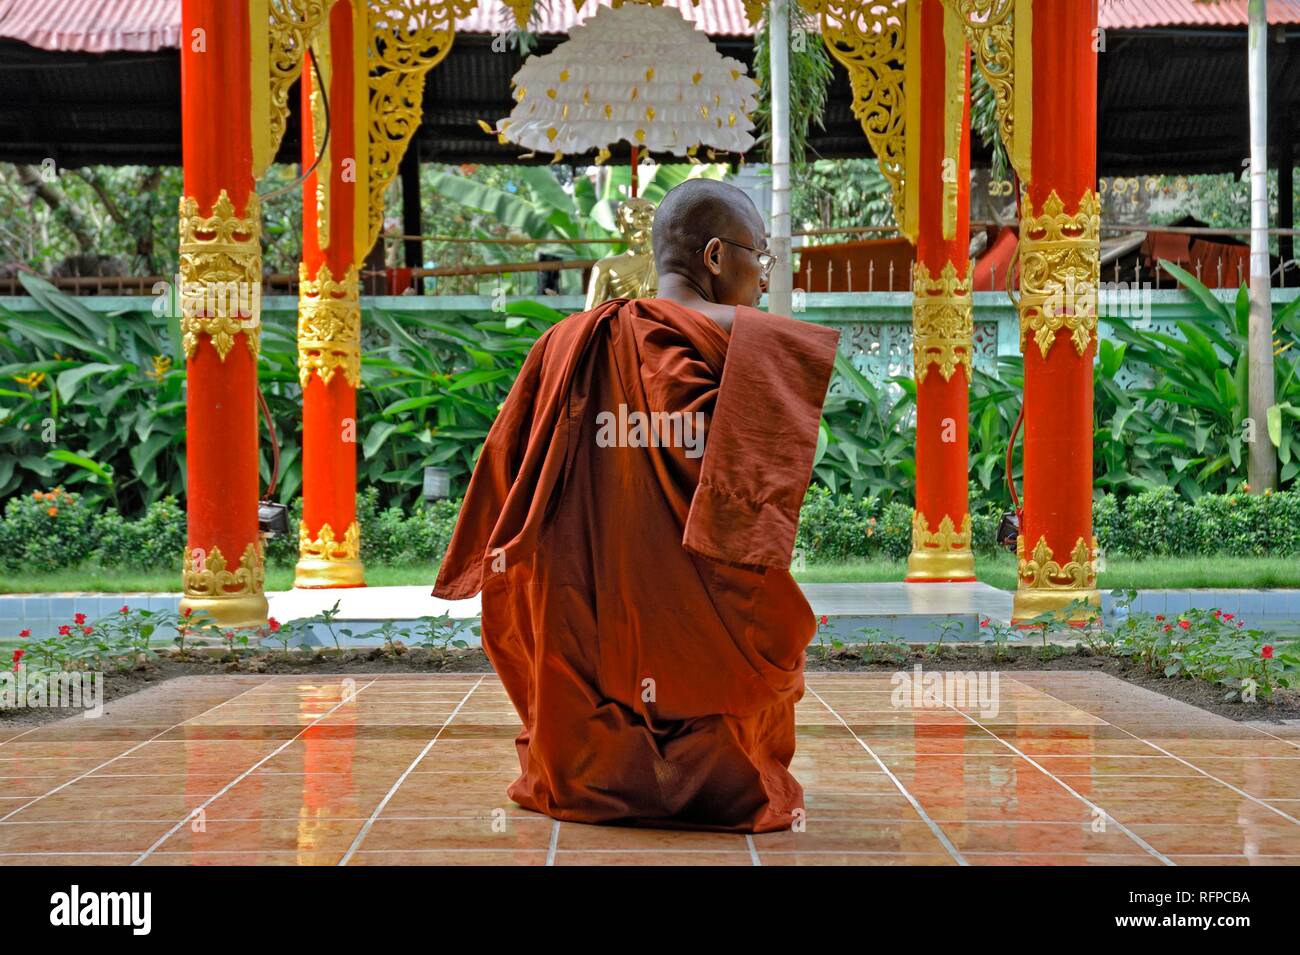 Monje budista dentro de una pagoda, Myanmar, Birmania Foto de stock